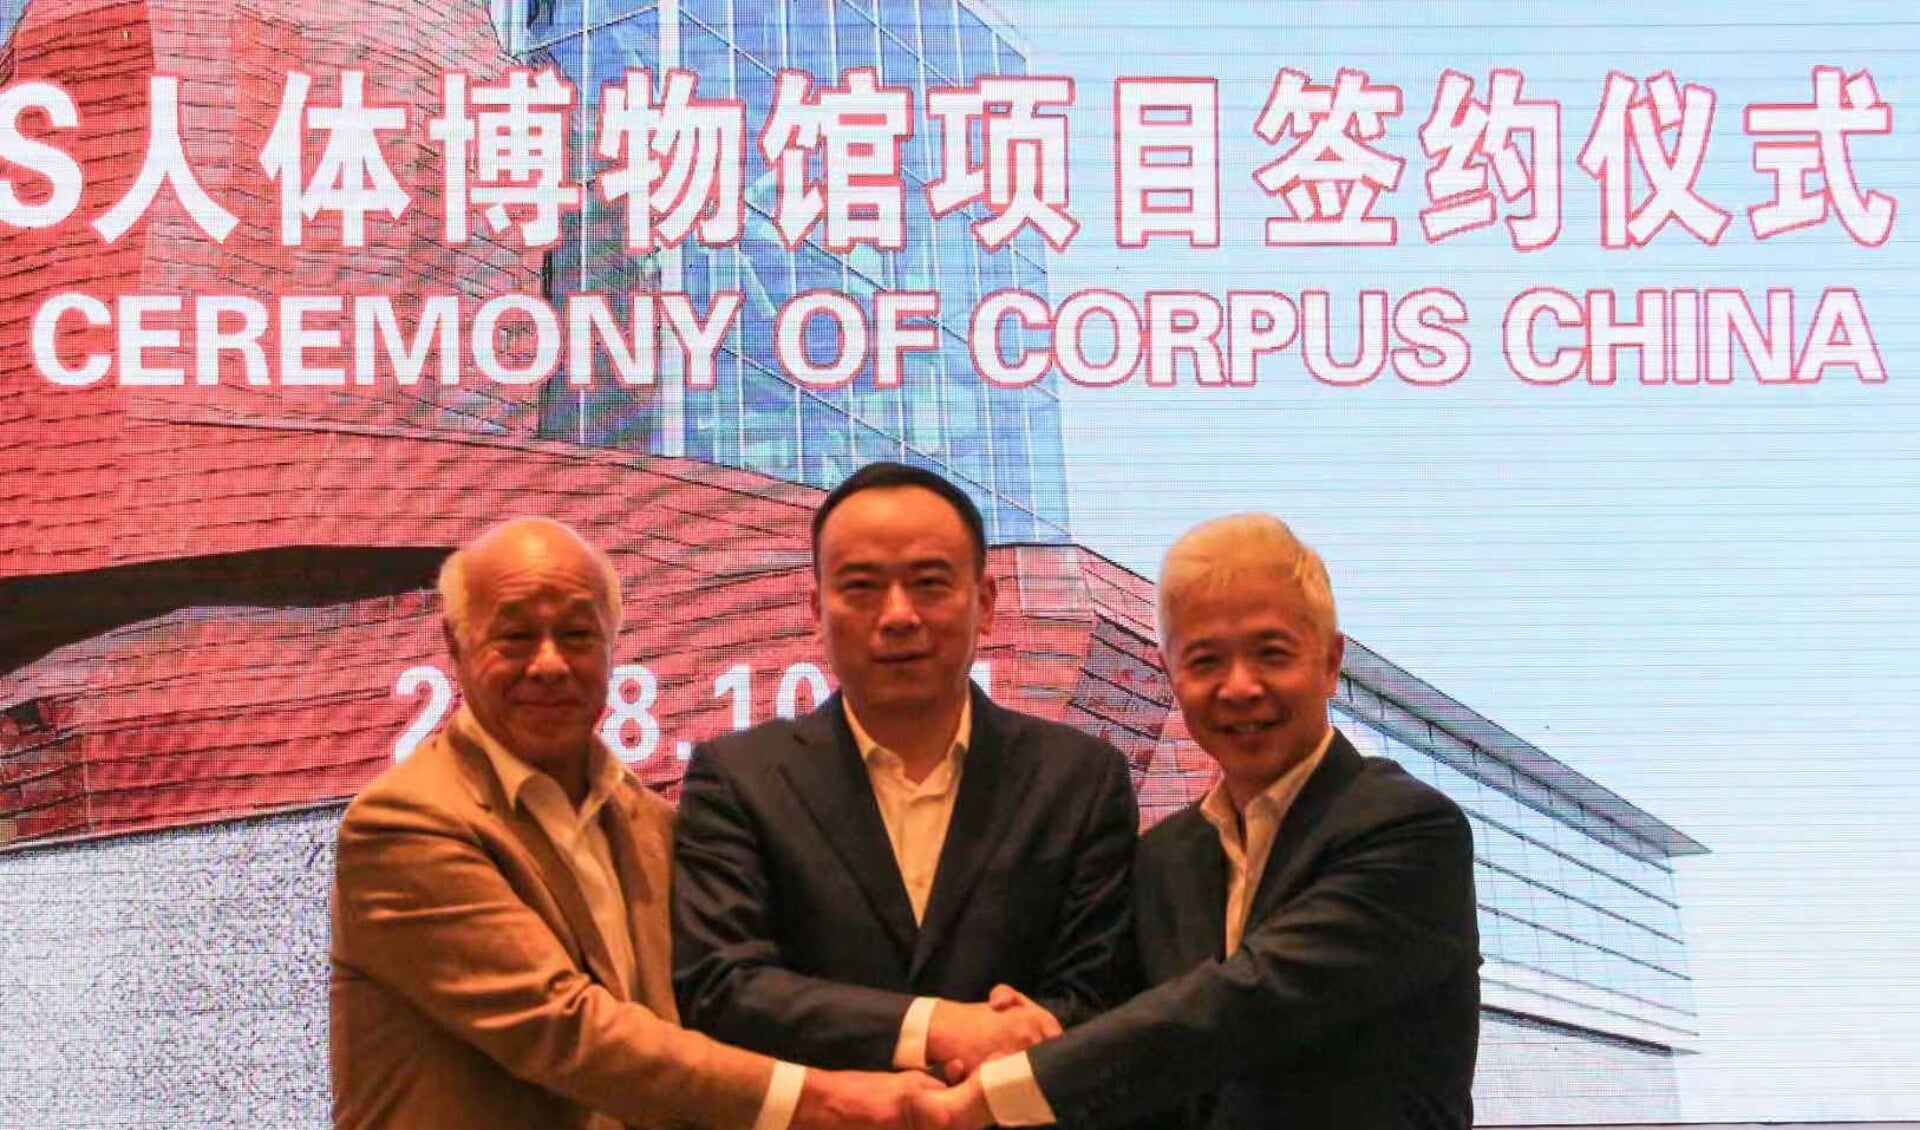 Henri Remmers, oprichter van Corpus, sloot een licentieovereenkomst met Ma'anshan Zhengpu Port New District Construction Investment Co., Ltd. en CHIC Group voor de bouw van Corpus bij Nanjing.